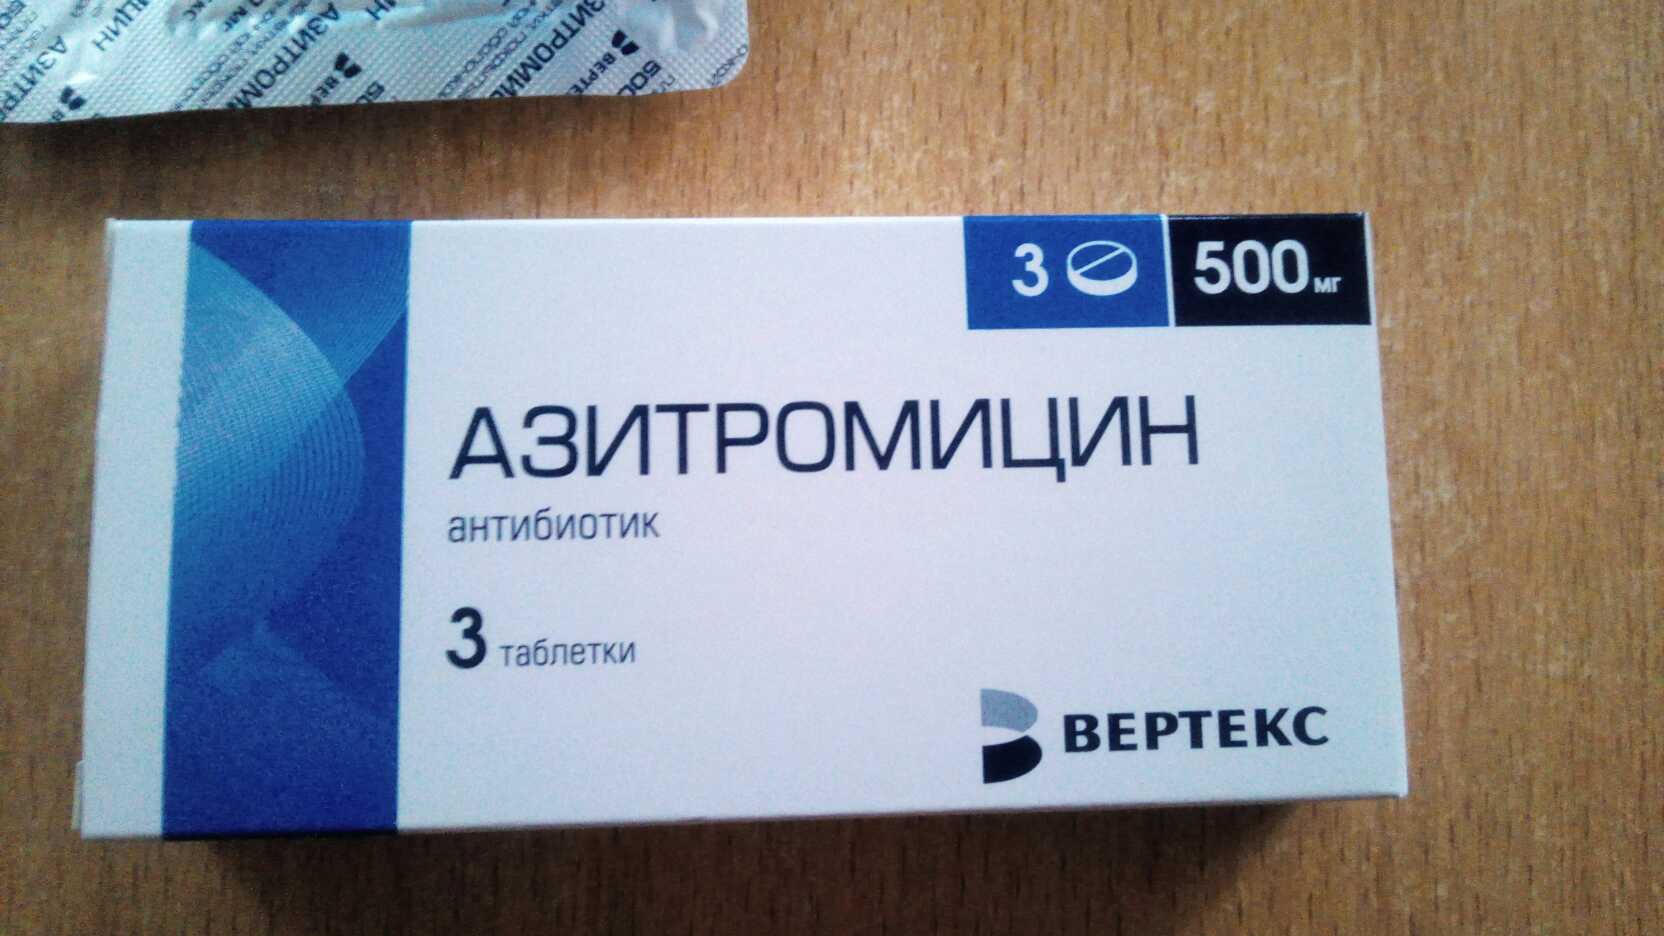 Три антибиотика. Антибиотик Азитромицин 3 таблетки. Антибиотик 3 таблетки название Азитромицин. Антибиотик 3 таблетки 500.